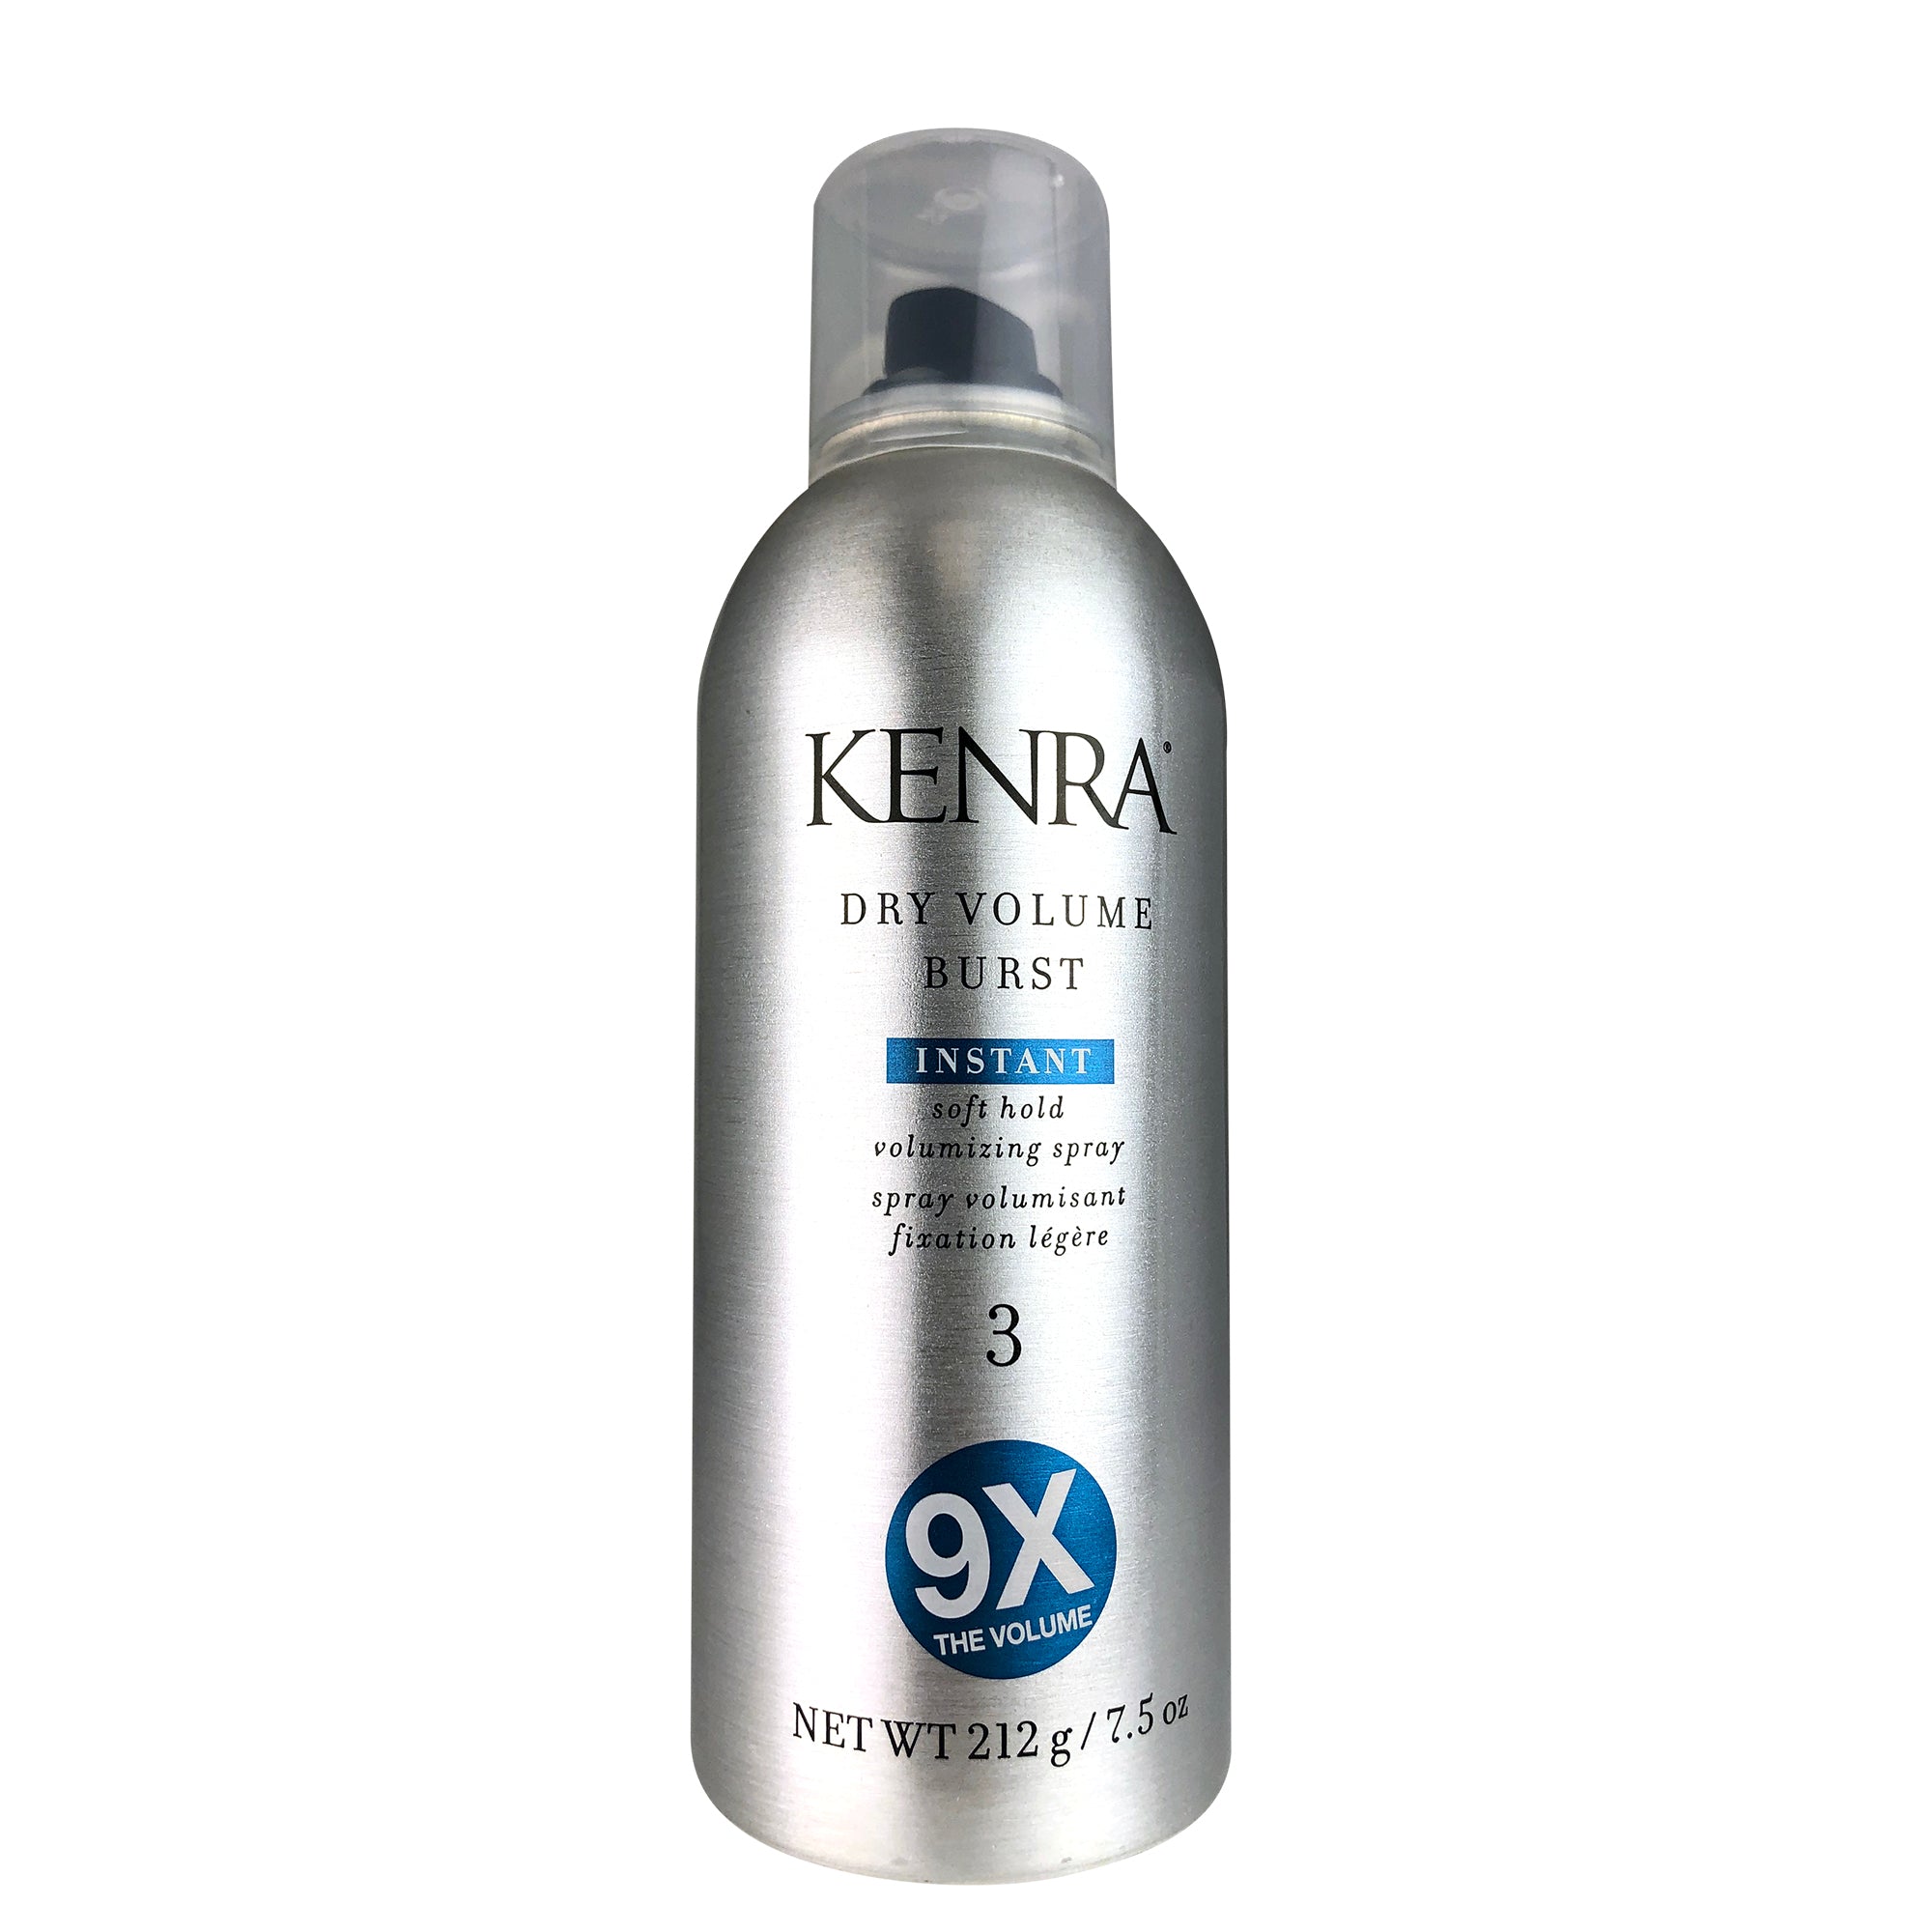 Kenra Dry Volume Burst Spray 3